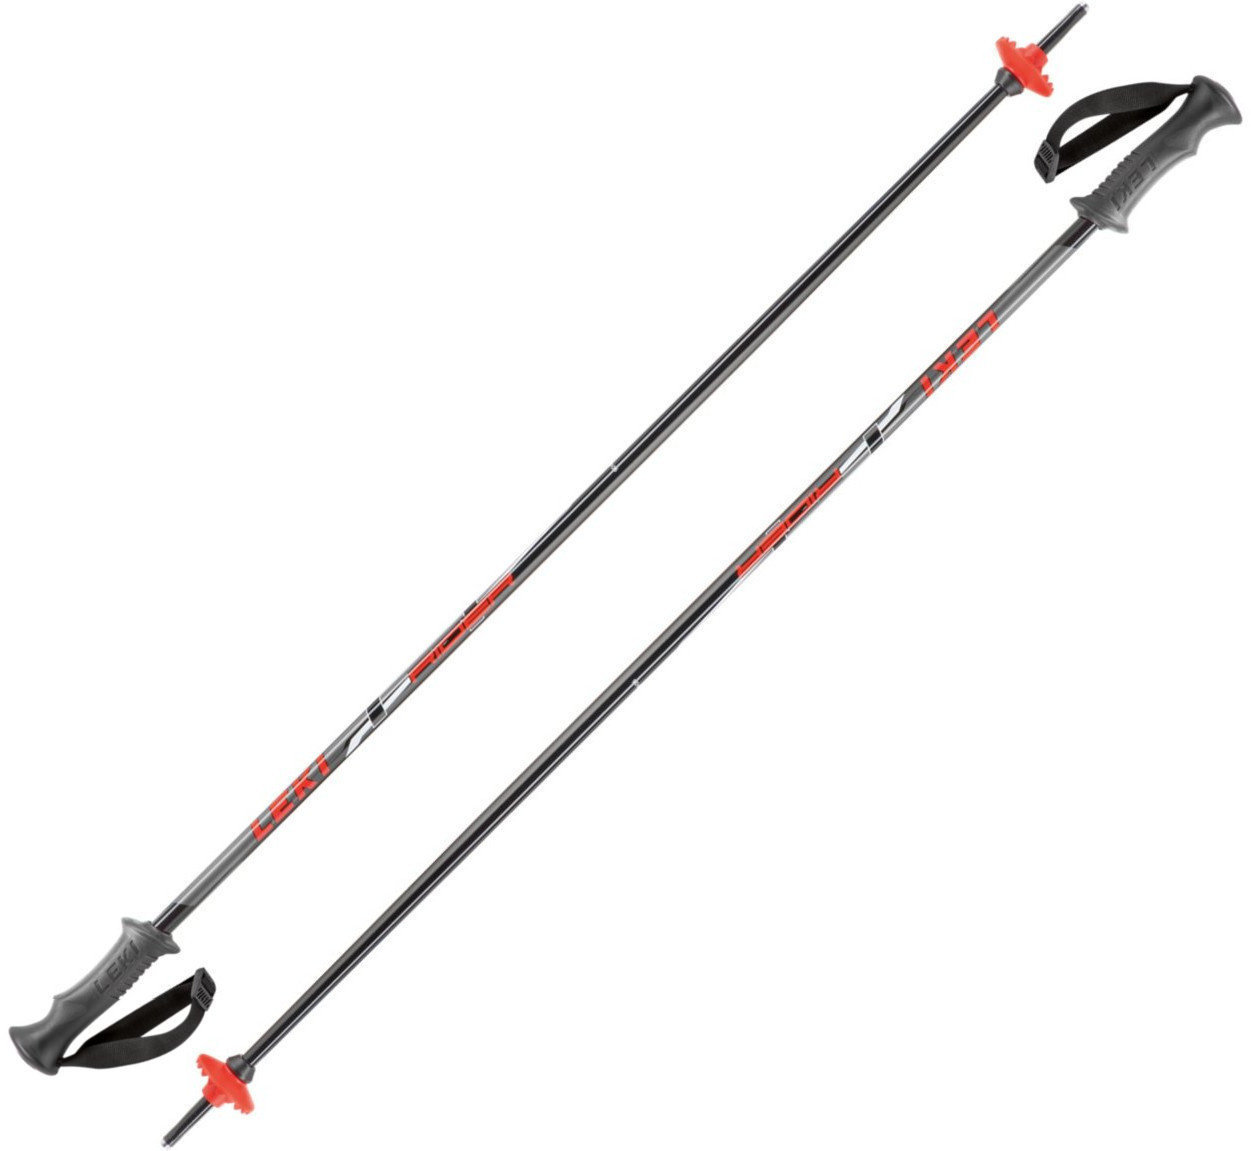 Ski Poles Leki Rider Black/Red-White-Anthracite 100 17/18